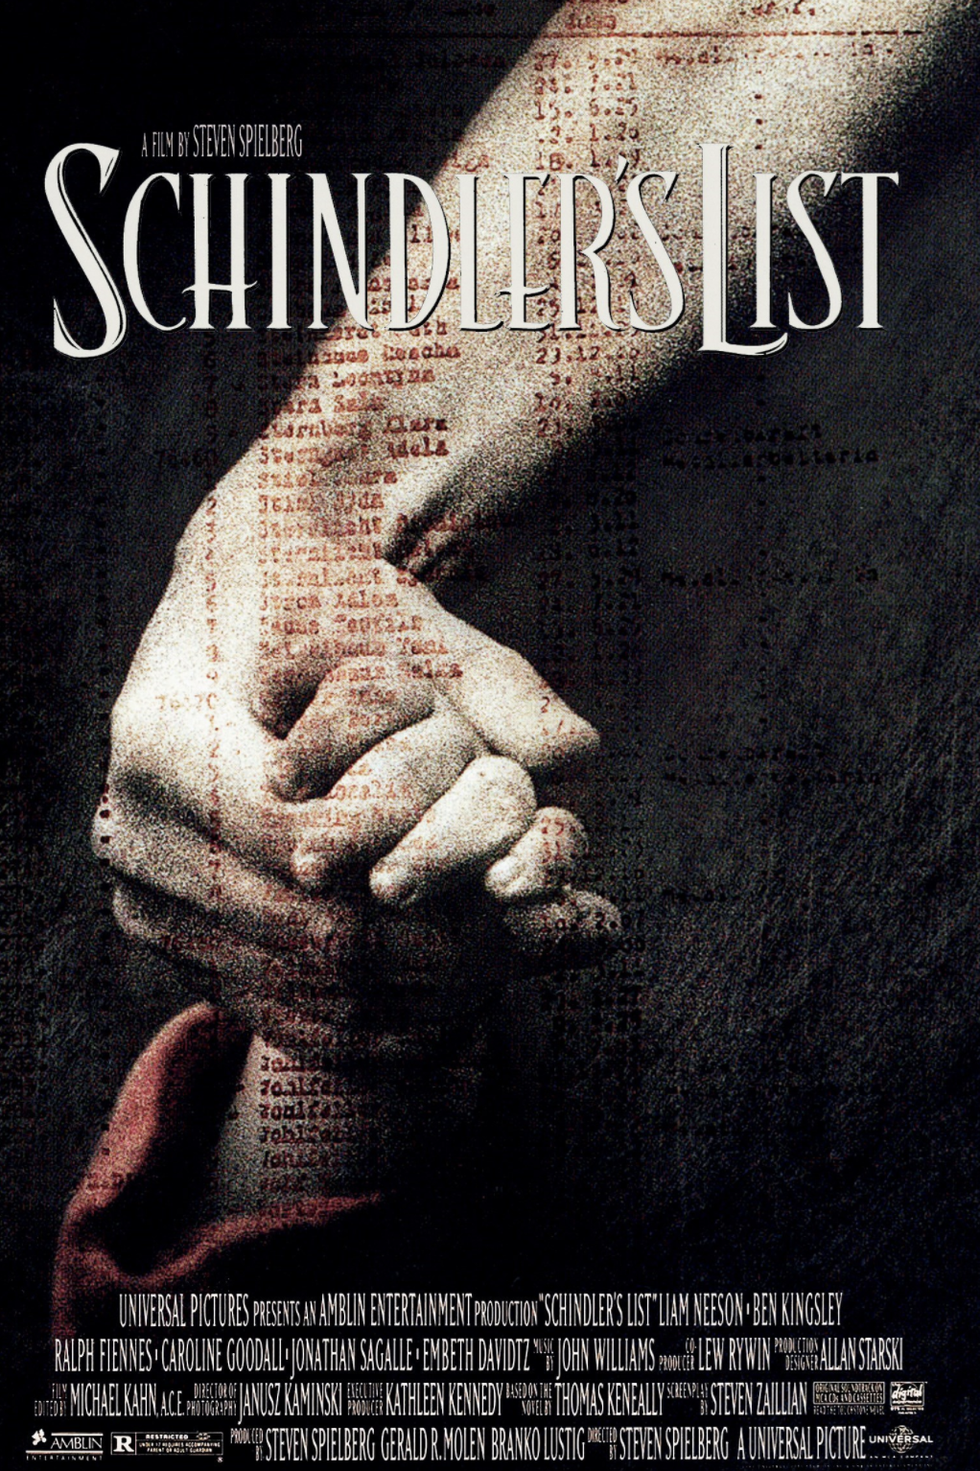 'schindler's list' movie poster